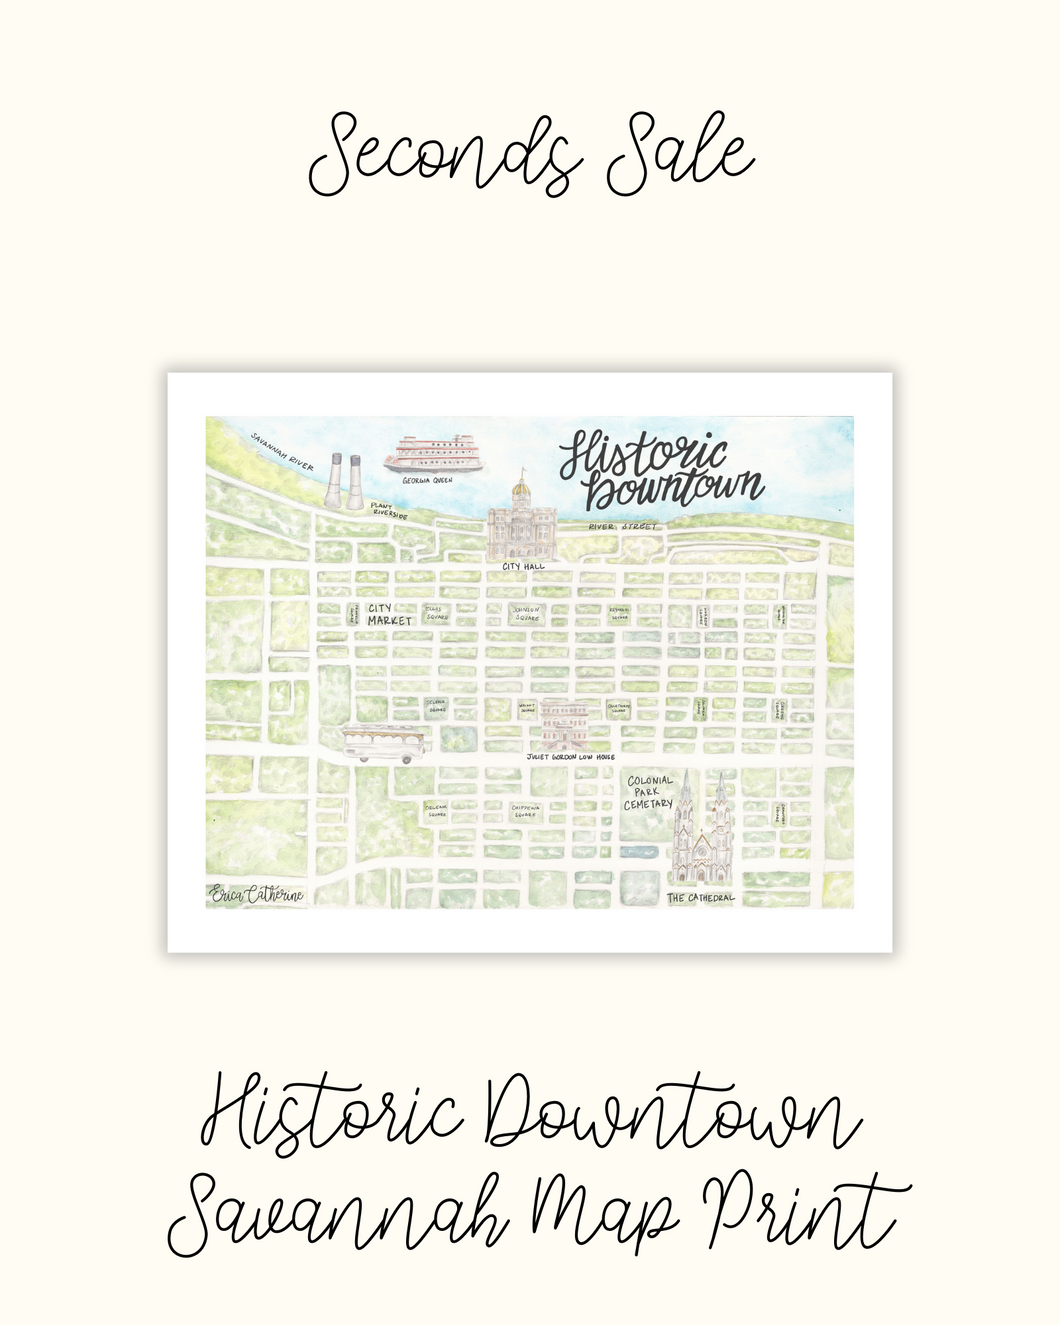 Historic Downtown Savannah Map Print - Seconds Sale